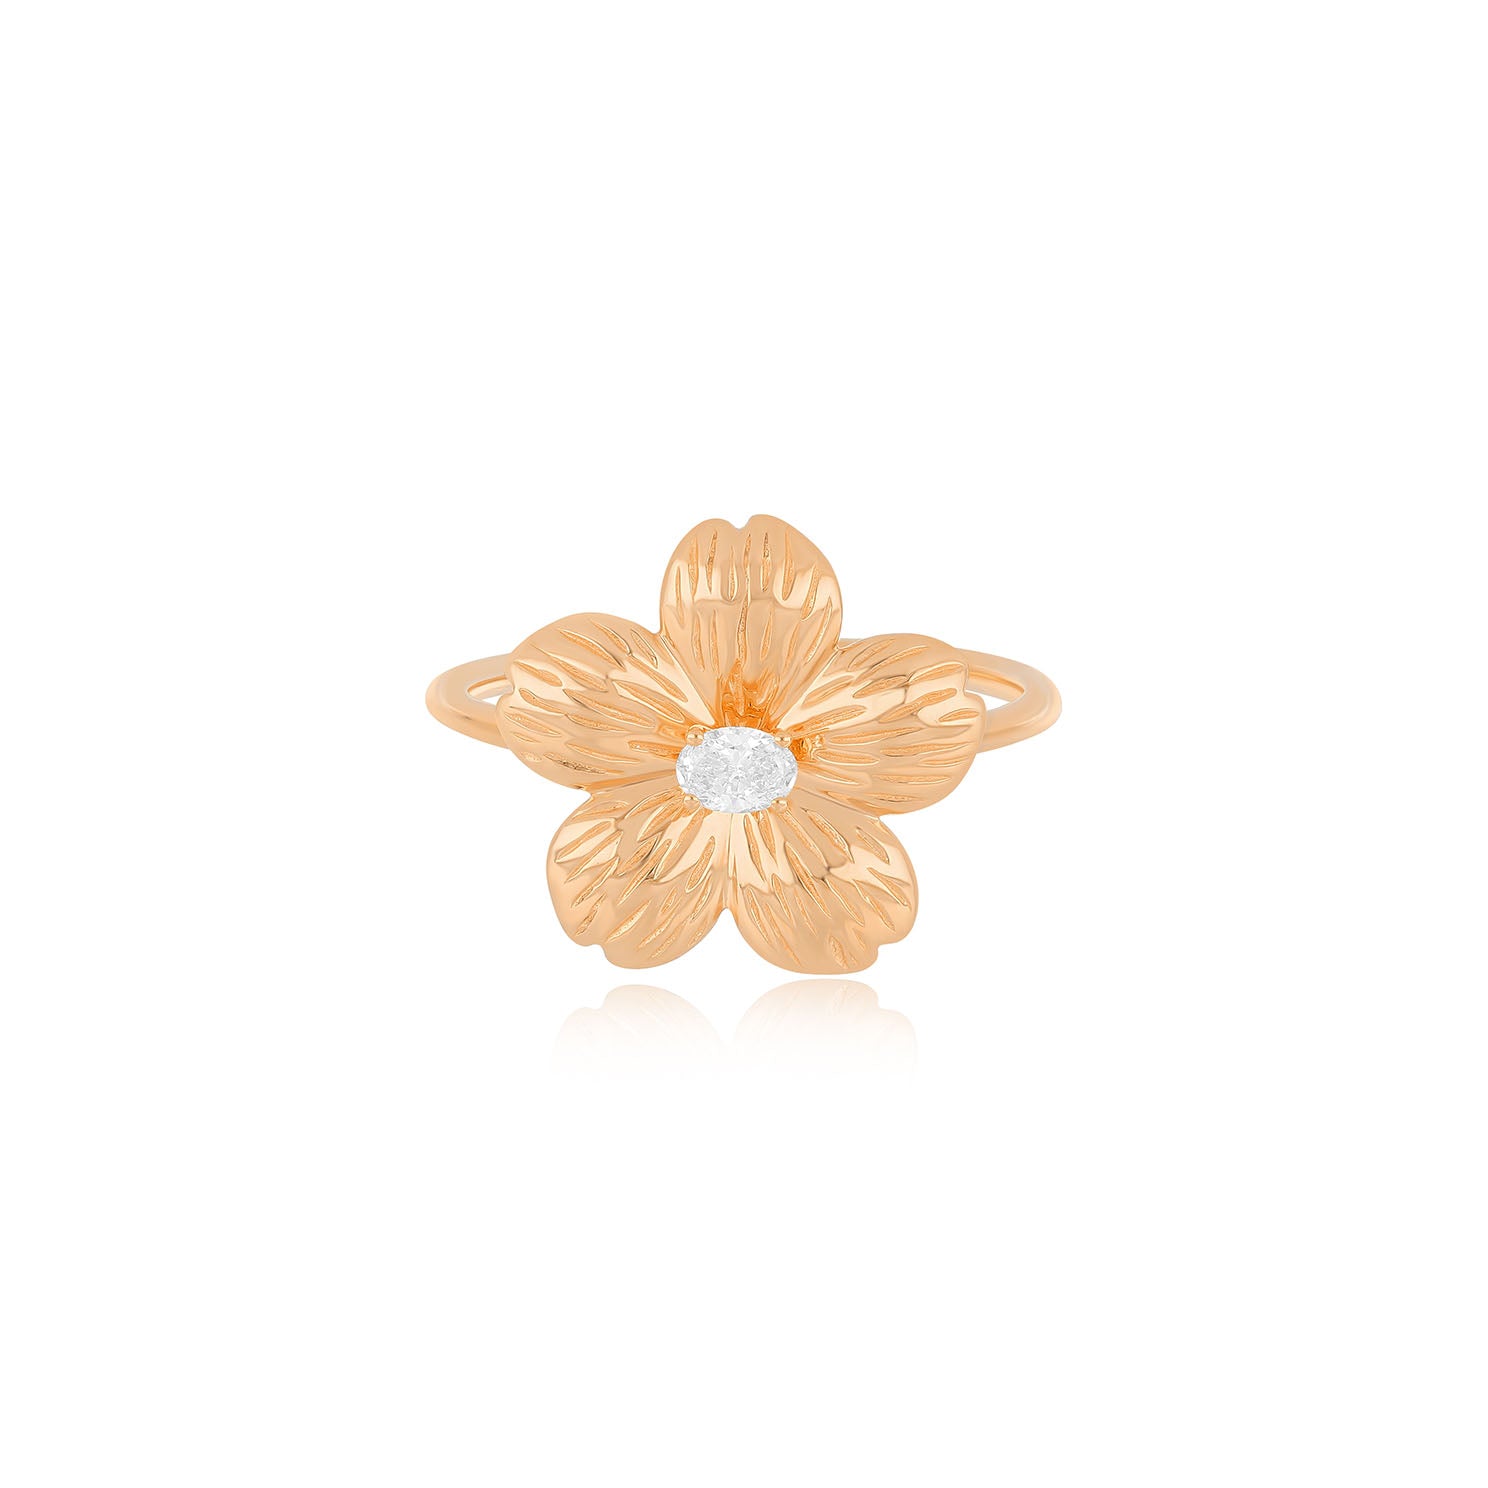 Cherry Blossom Ring in 14k rose gold